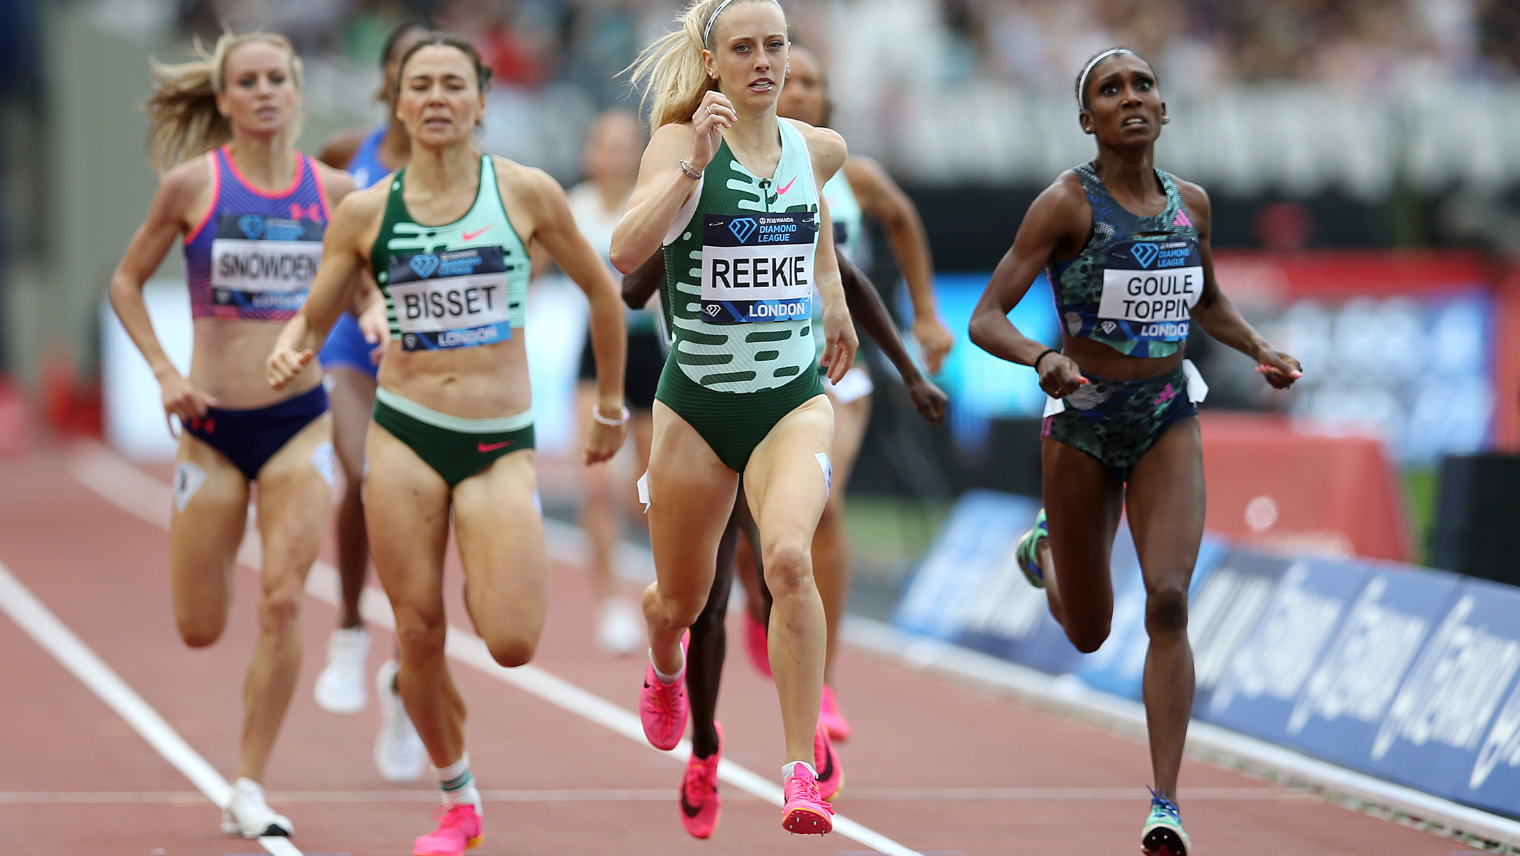 Females running at London Athletics